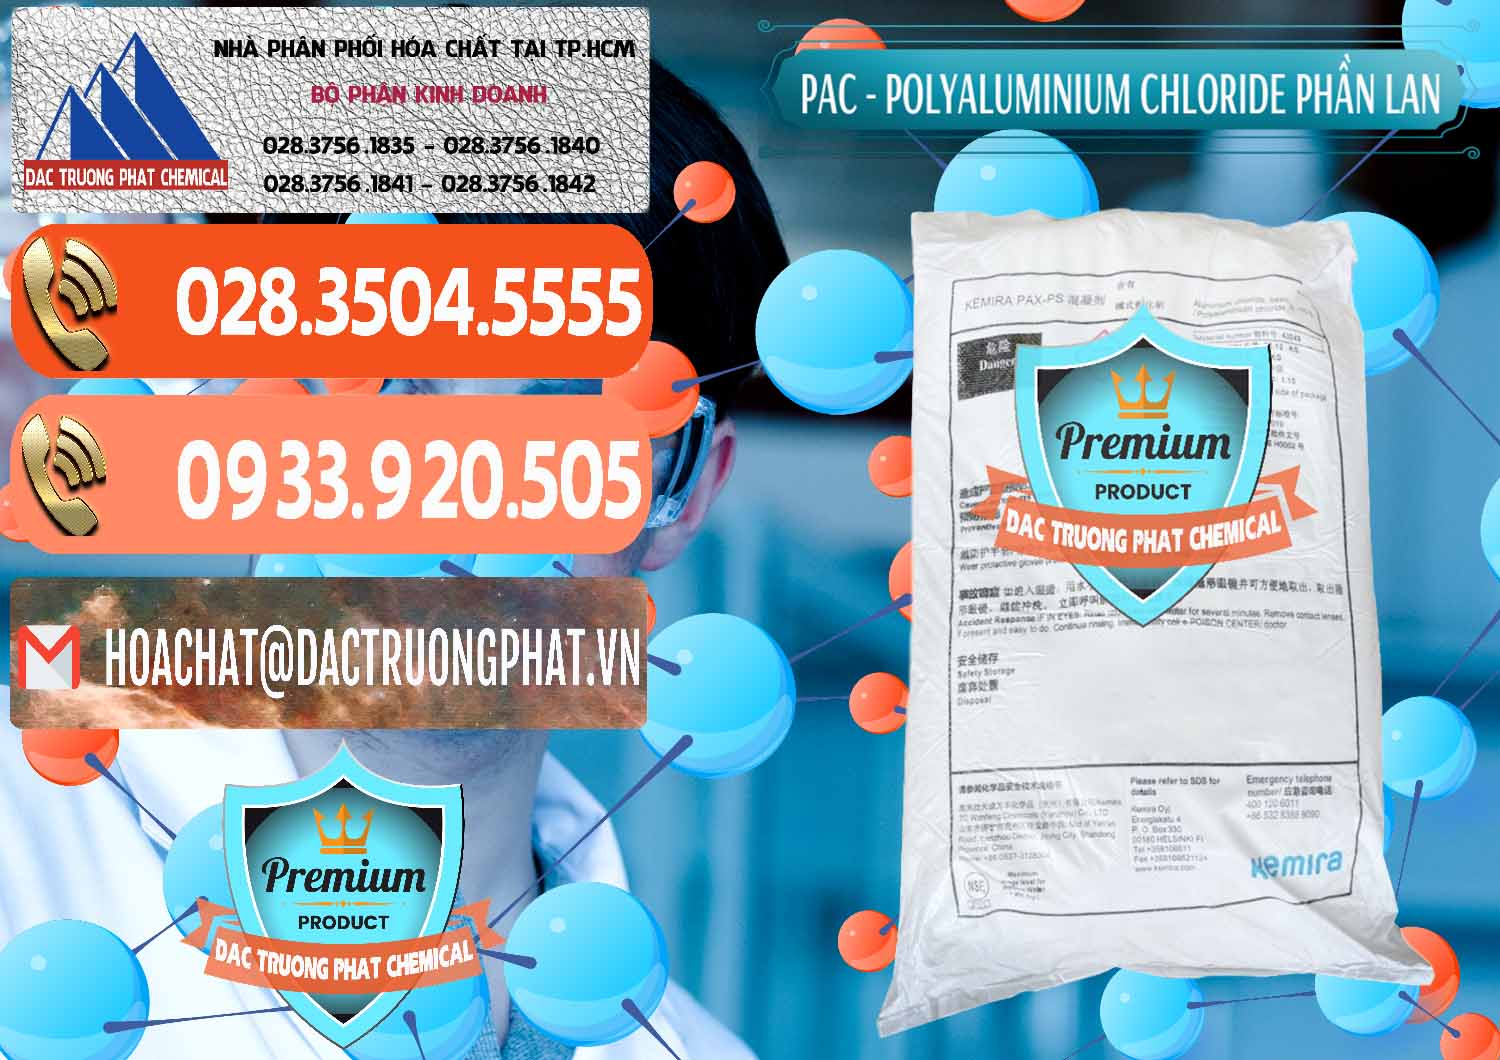 Nơi chuyên kinh doanh và bán PAC - Polyaluminium Chloride Phần Lan Finland - 0383 - Nhà cung cấp ( kinh doanh ) hóa chất tại TP.HCM - hoachatmientay.com